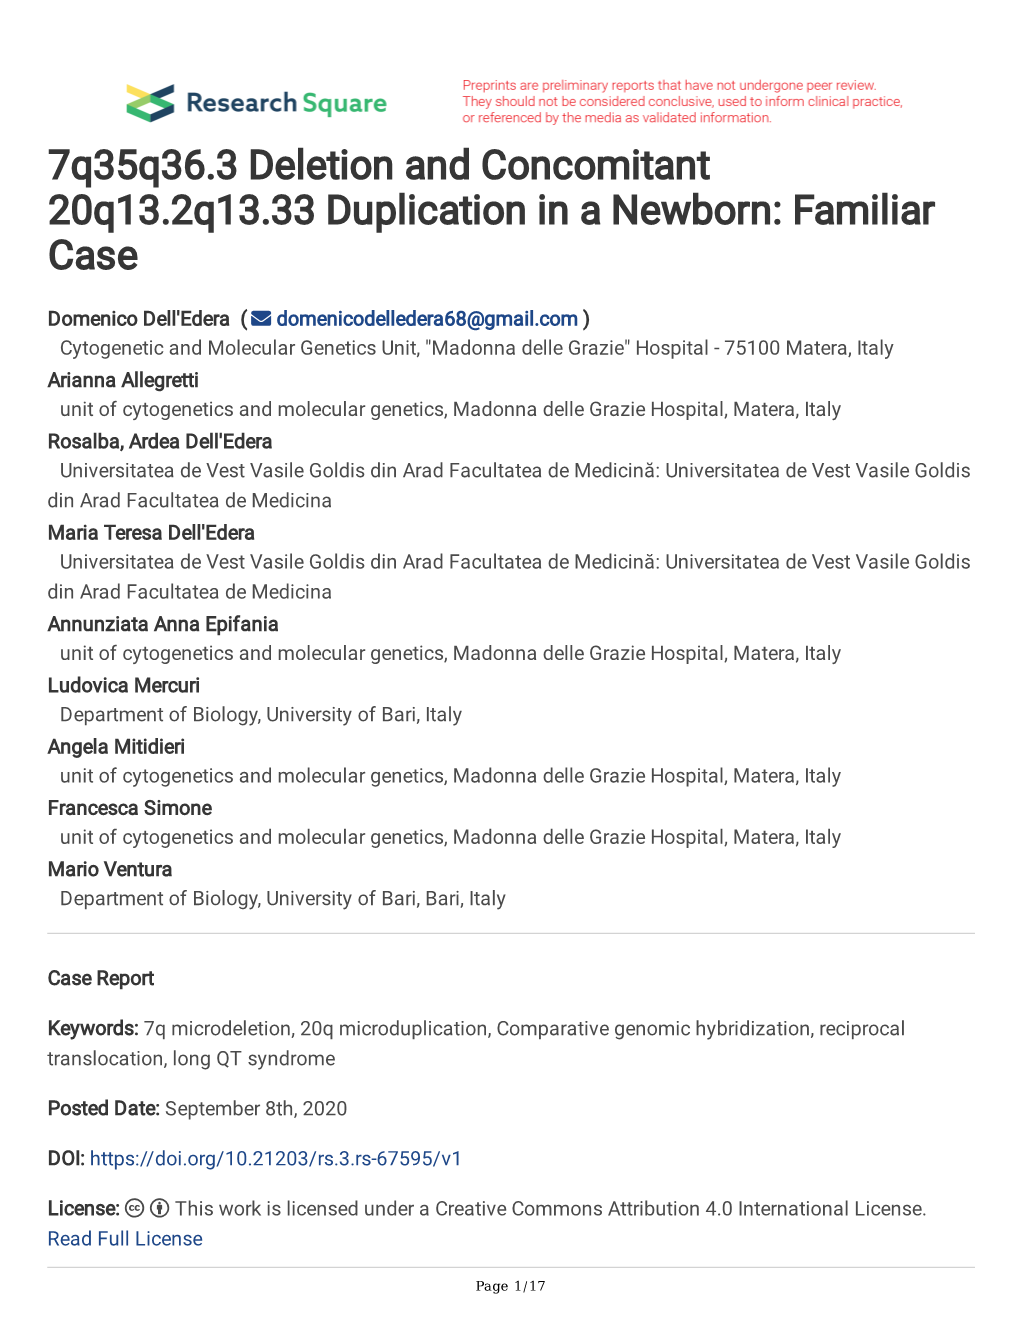 7Q35q36.3 Deletion and Concomitant 20Q13.2Q13.33 Duplication in a Newborn: Familiar Case